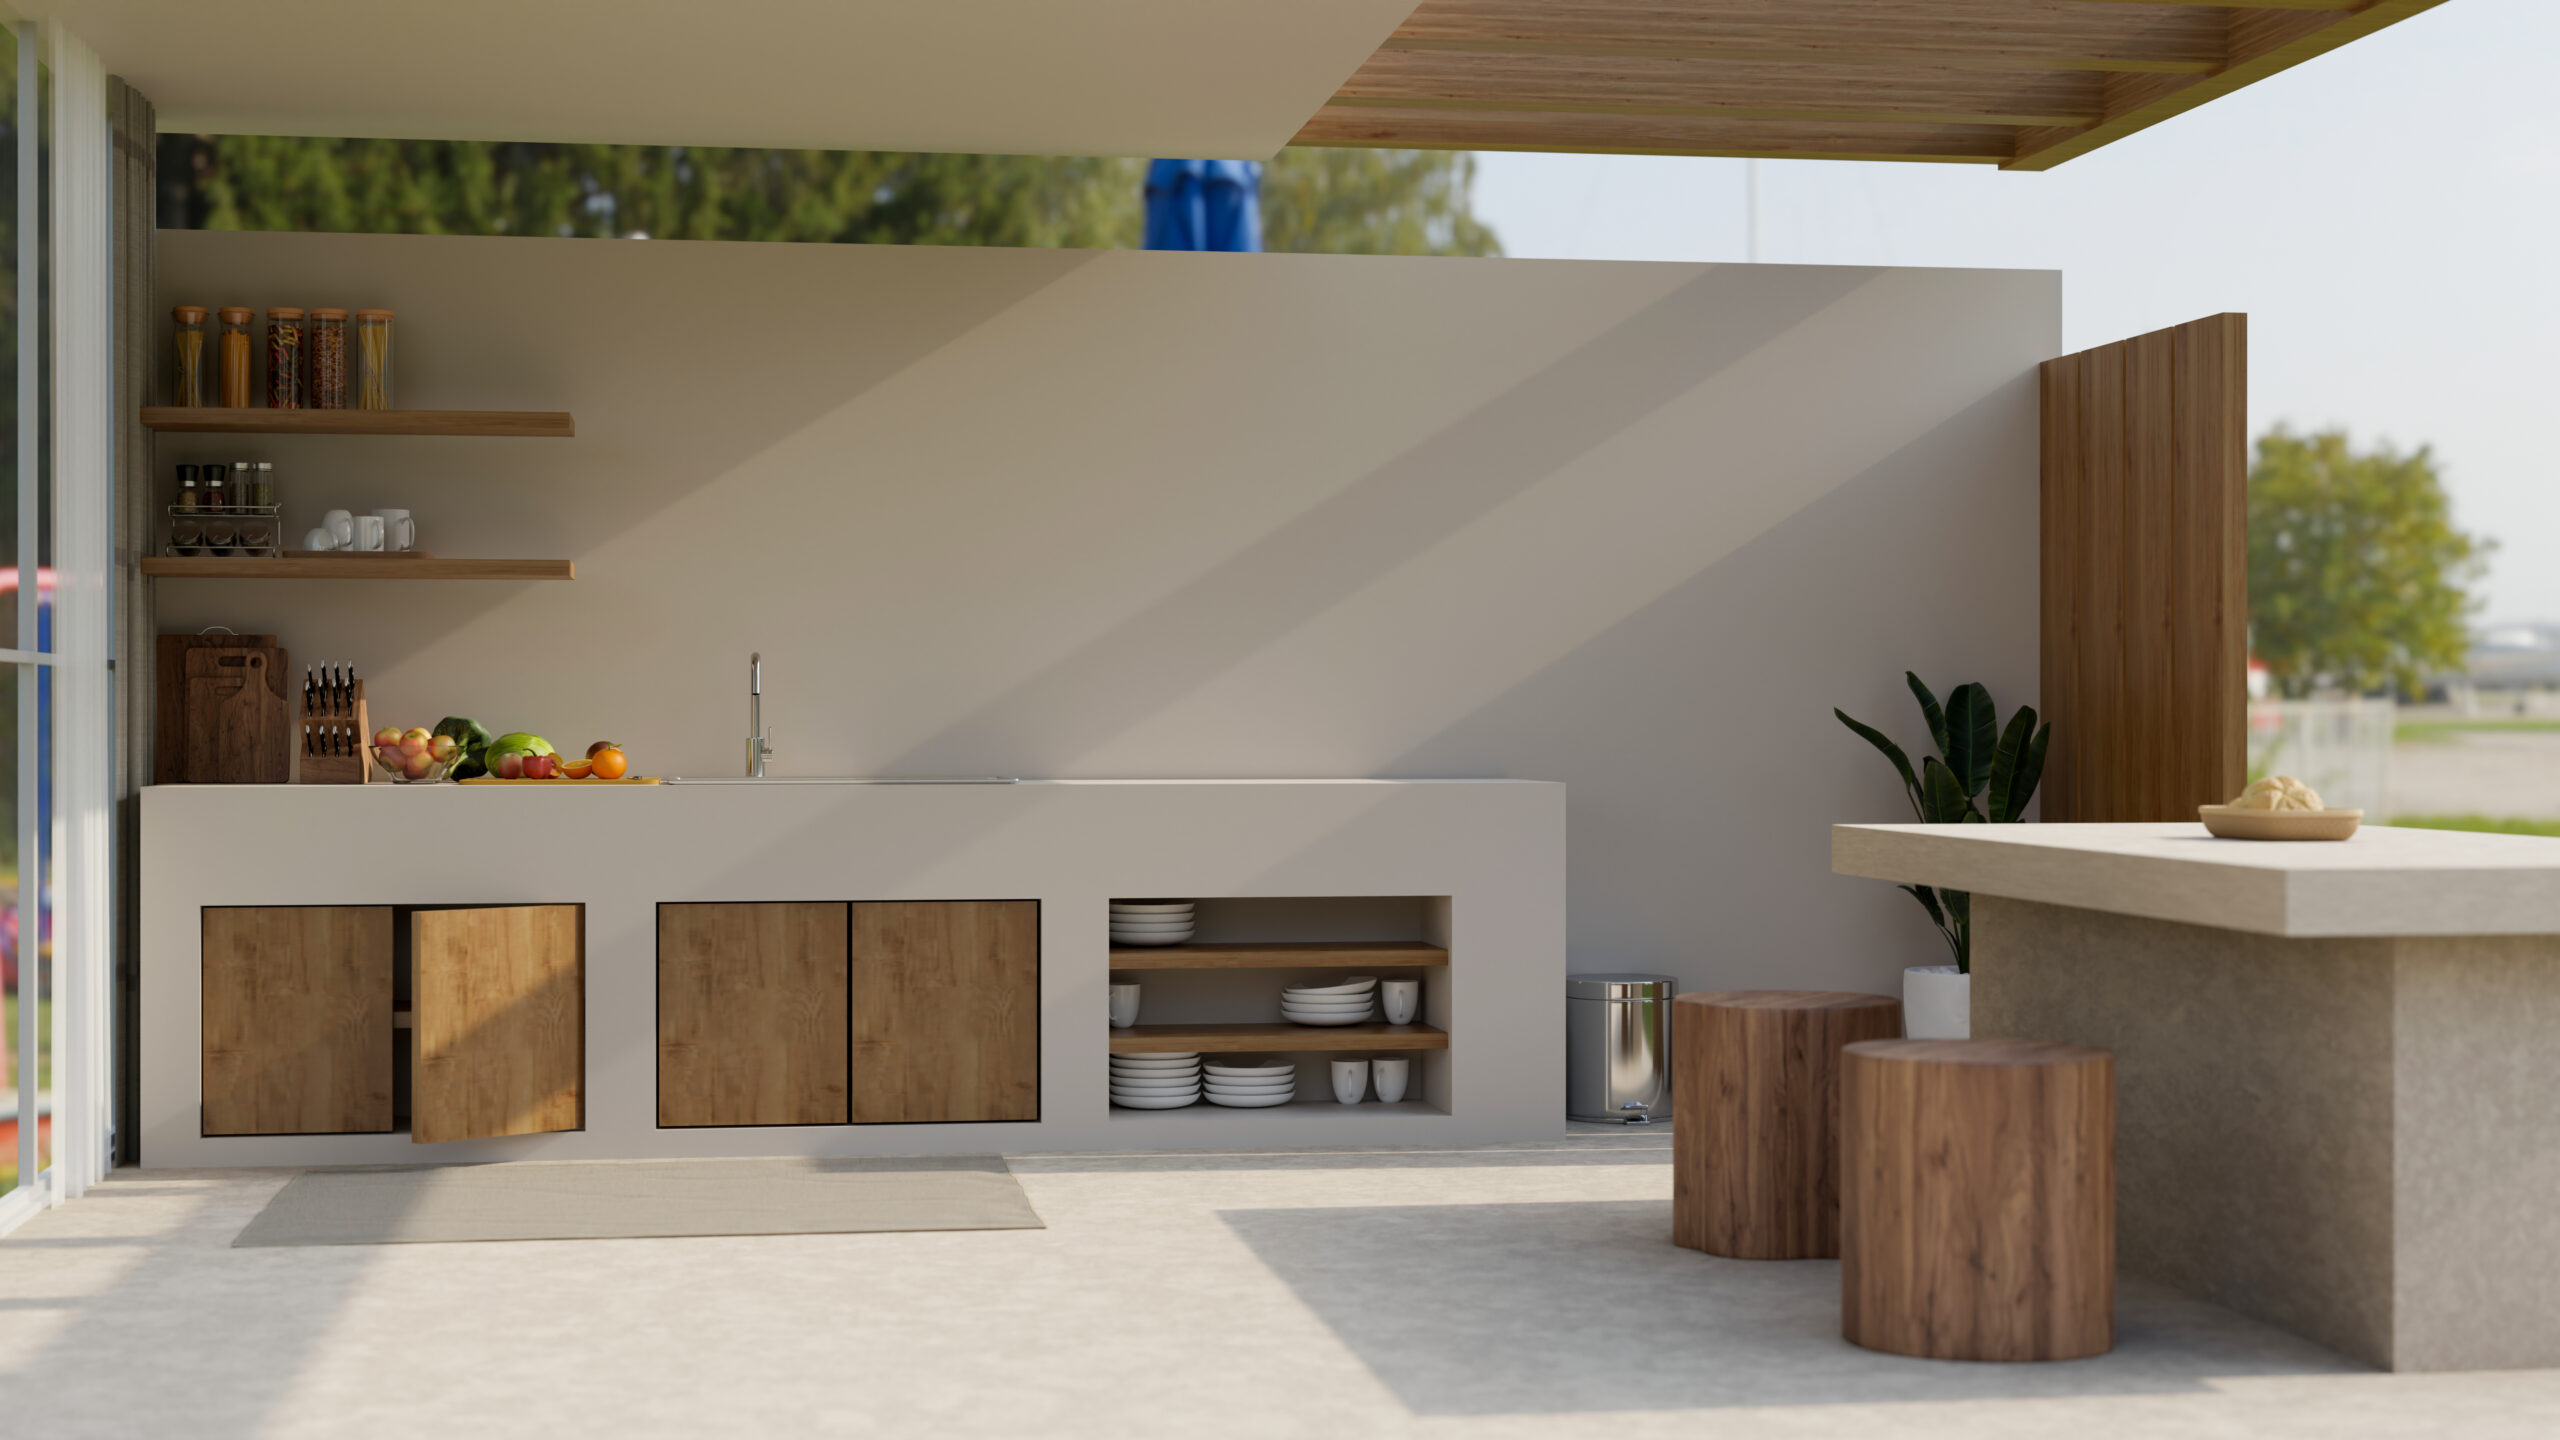 Modern outdoor kitchen exterior design